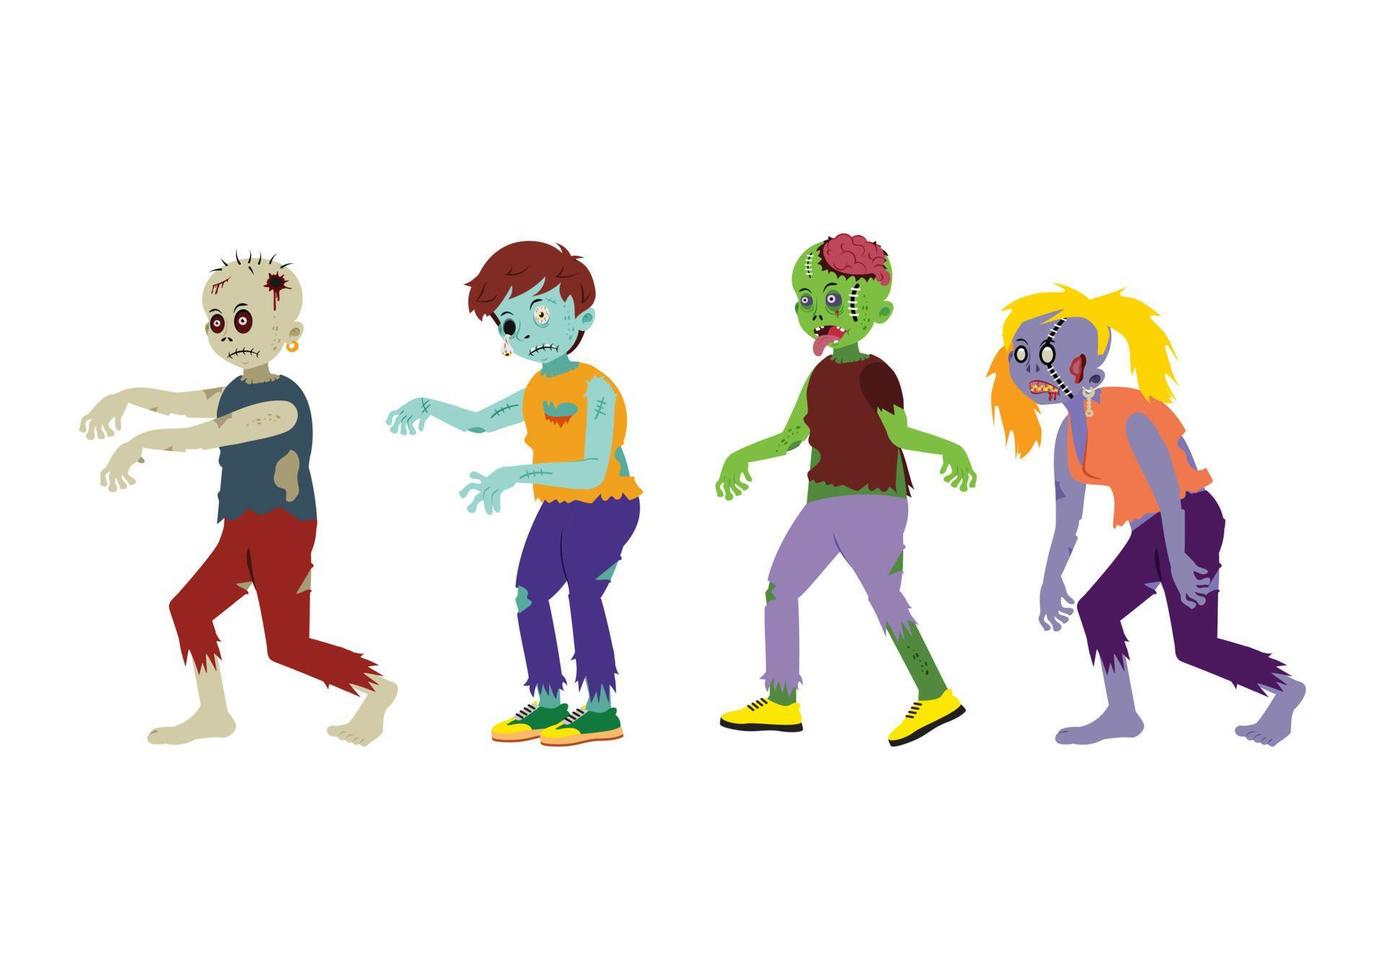 ander karakter van zombies illustratie. cartoon enge zombies geïsoleerd op een witte achtergrond vector